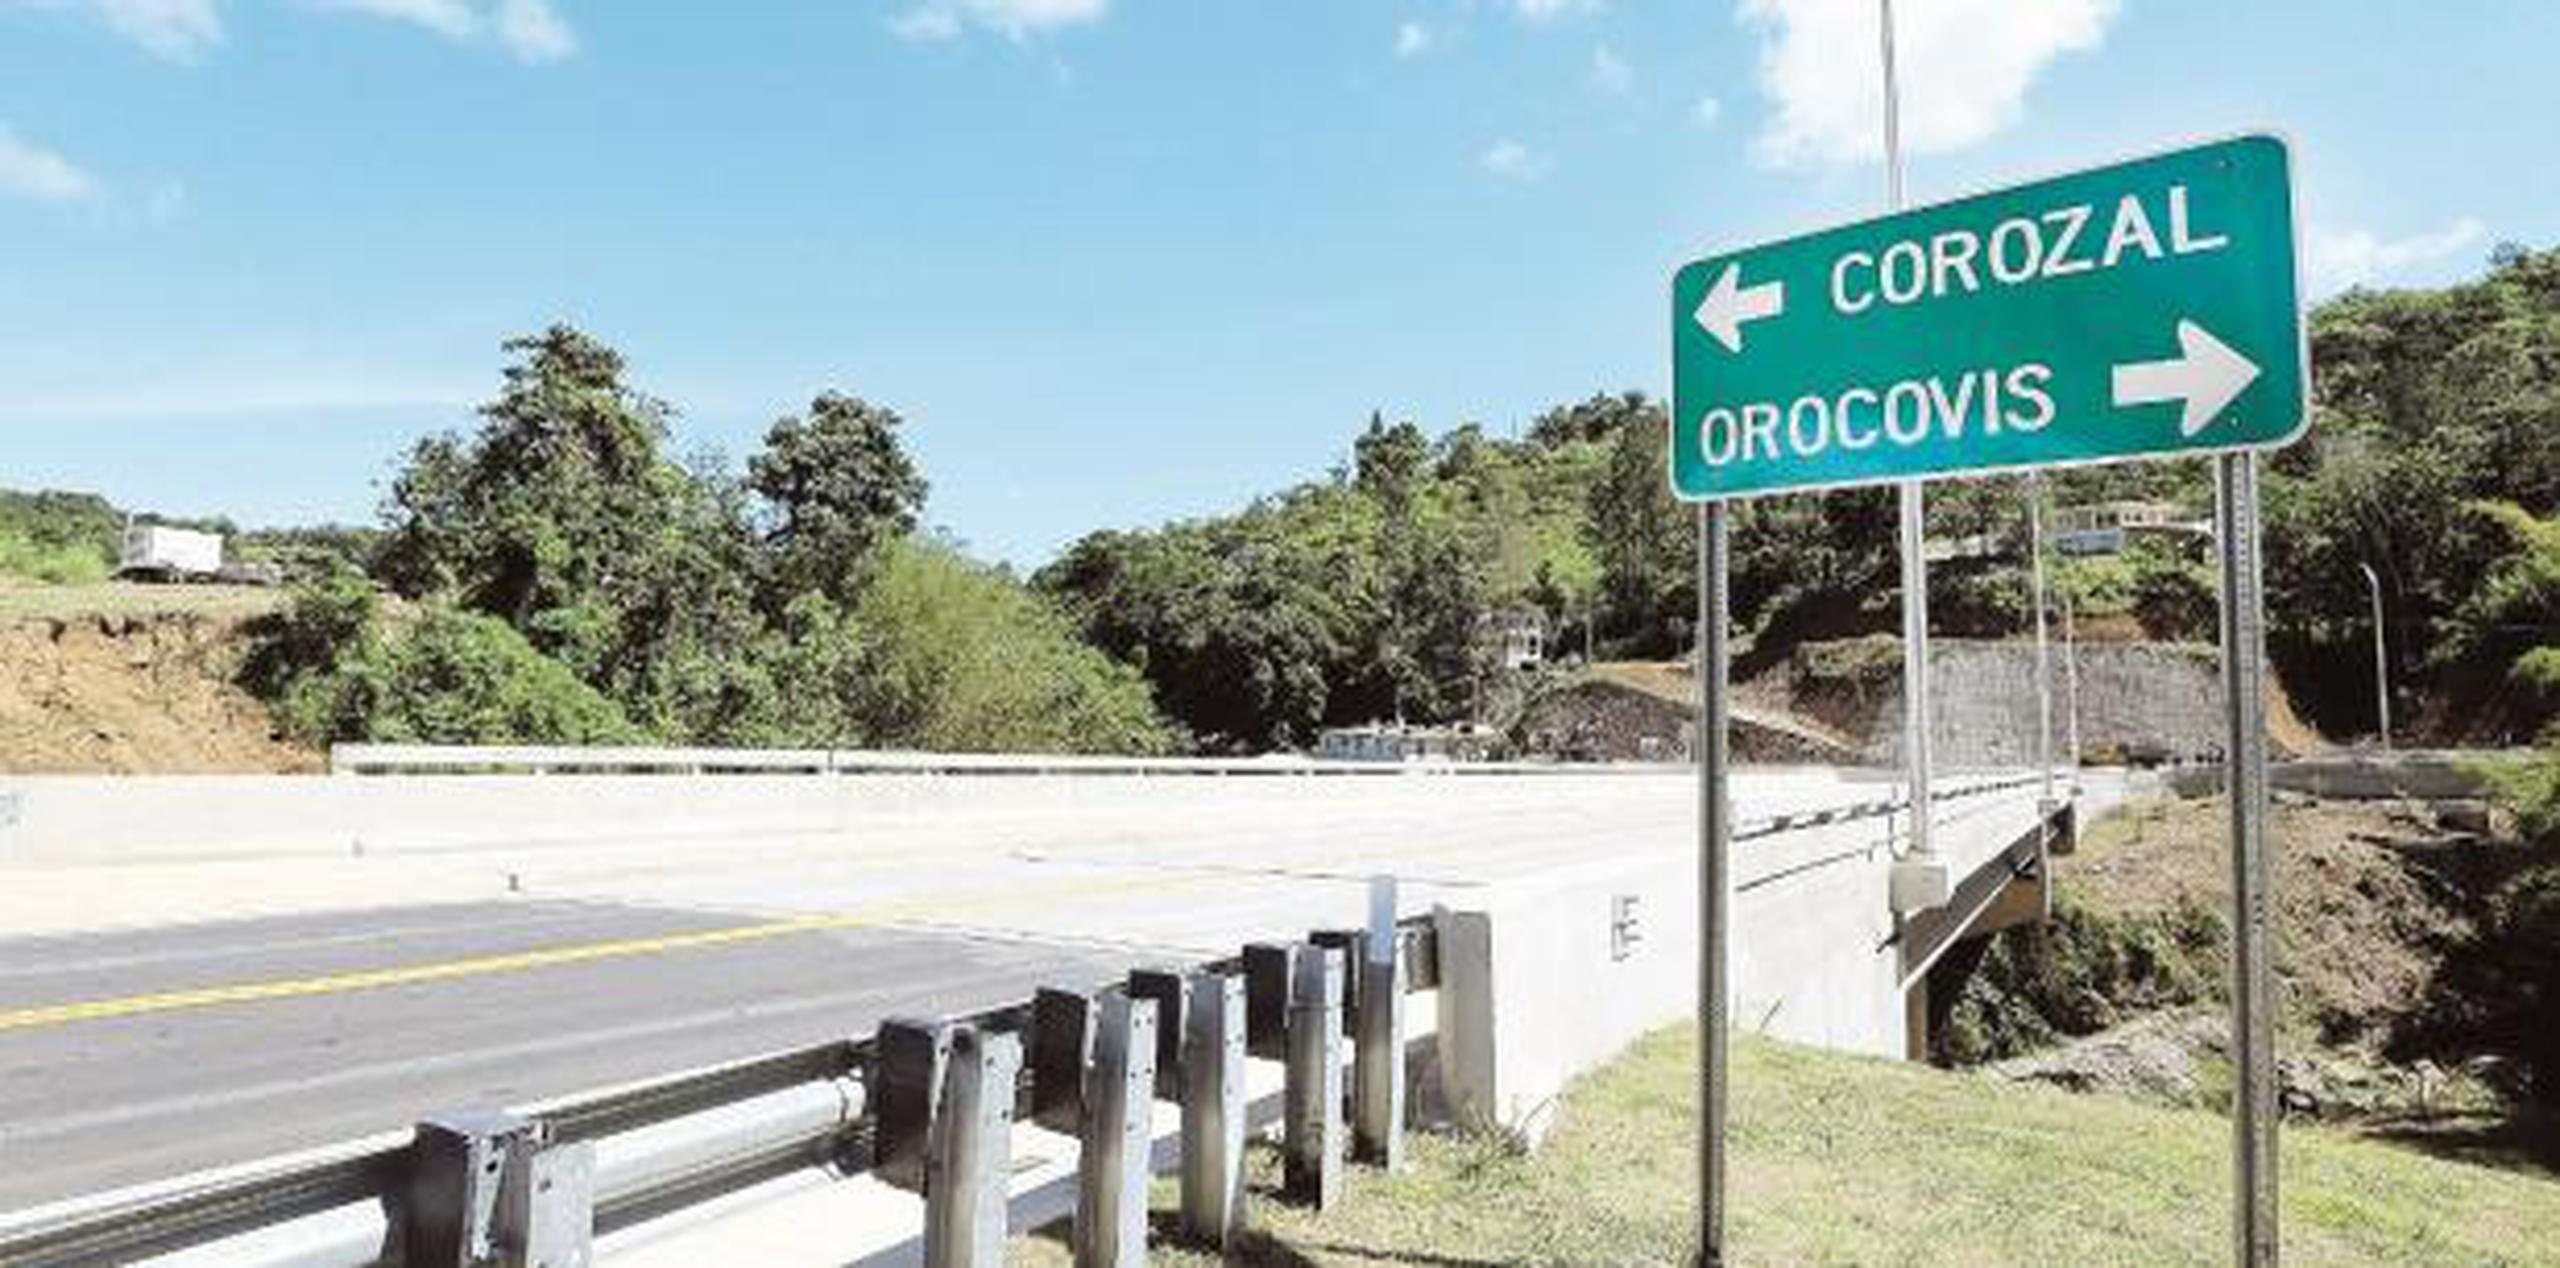 El municipio de Orocovis fue fundado en 1825 y desde entonces es conocido como el "Corazón de Puerto Rico" y el "Centro Geográfico de Puerto Rico", por estar ubicado, precisamente, en el centro de la isla. (Archivo)